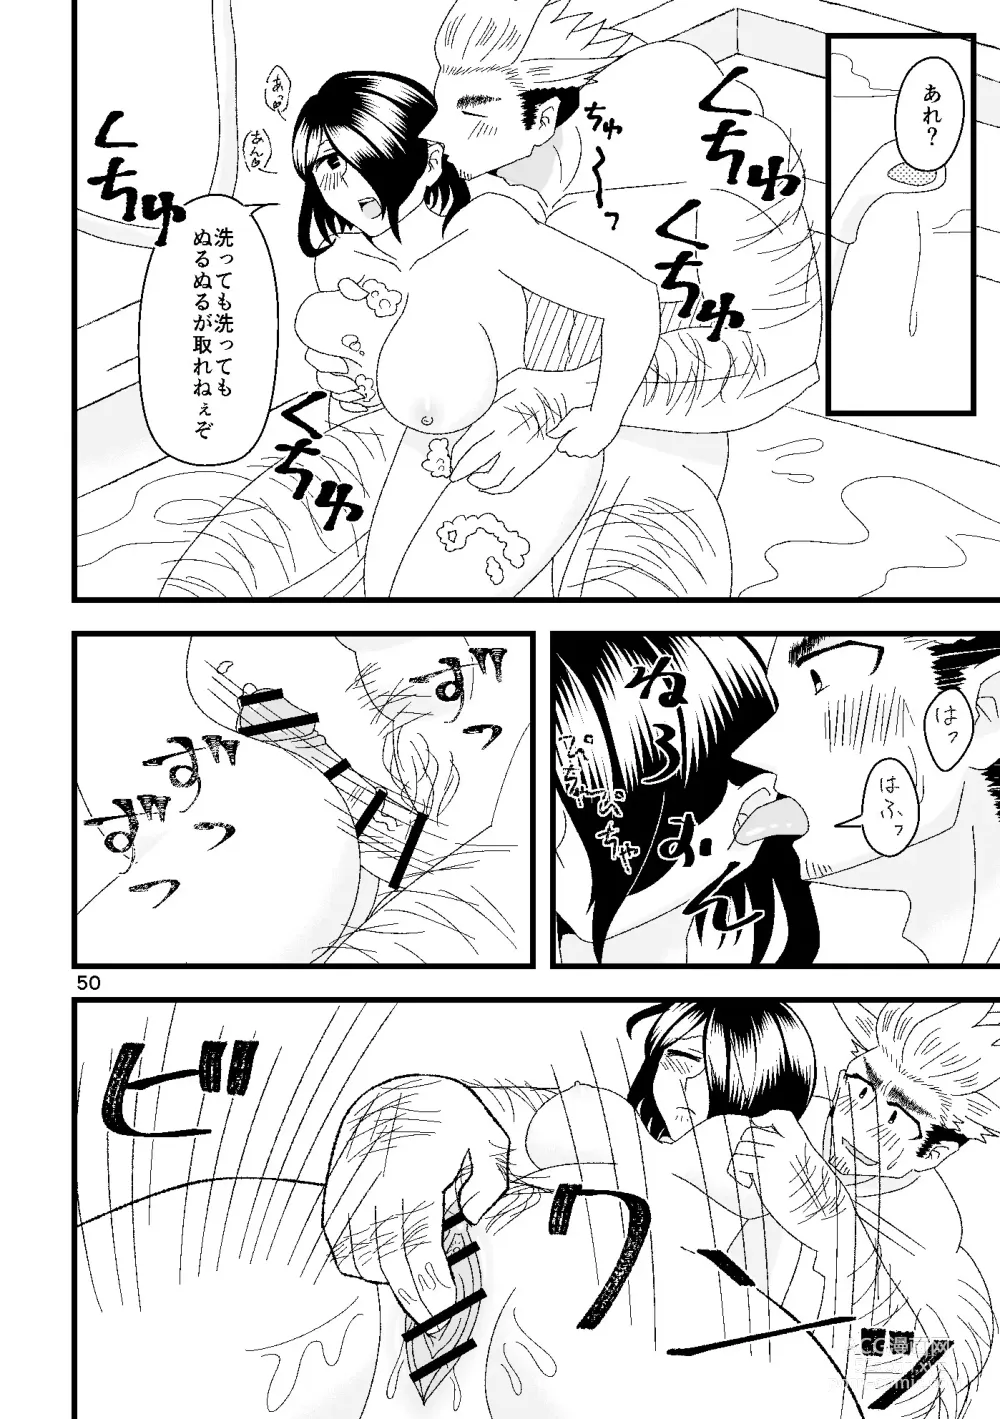 Page 51 of doujinshi Ichiban Shibori ni Nureru Hate